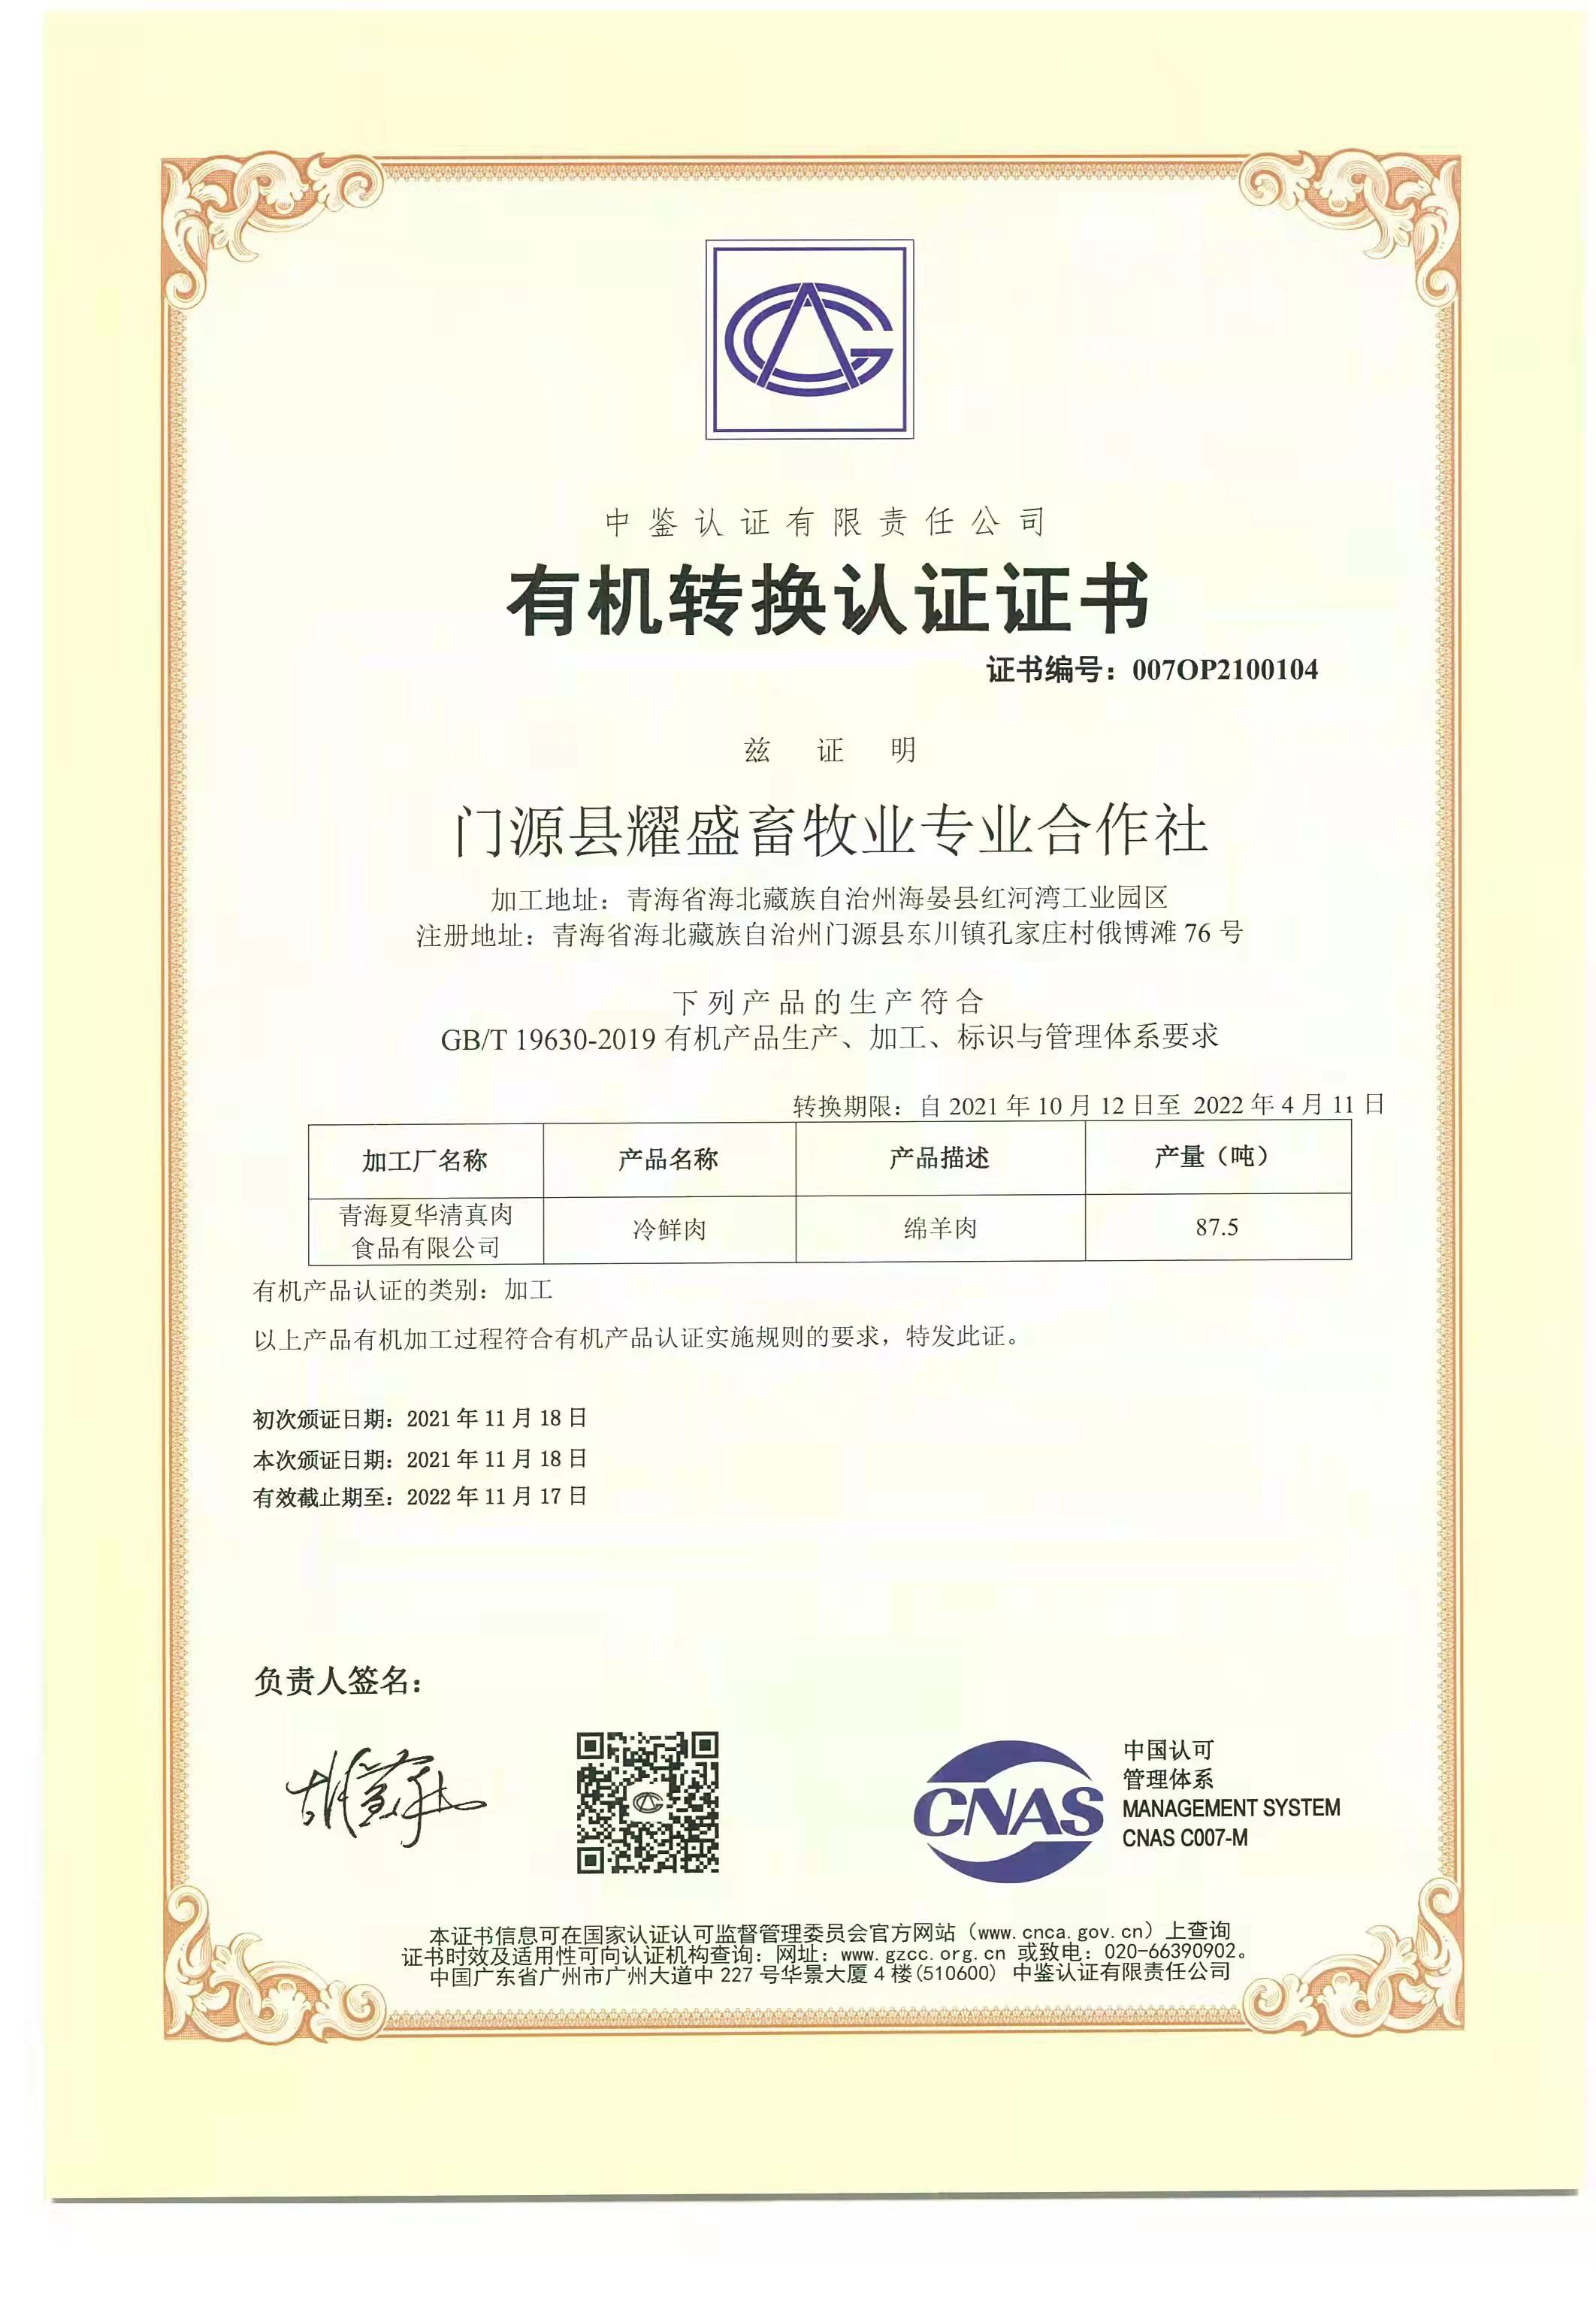 恭喜门源县耀盛畜牧业专业合作社顺利通过审核取得有机认证证书